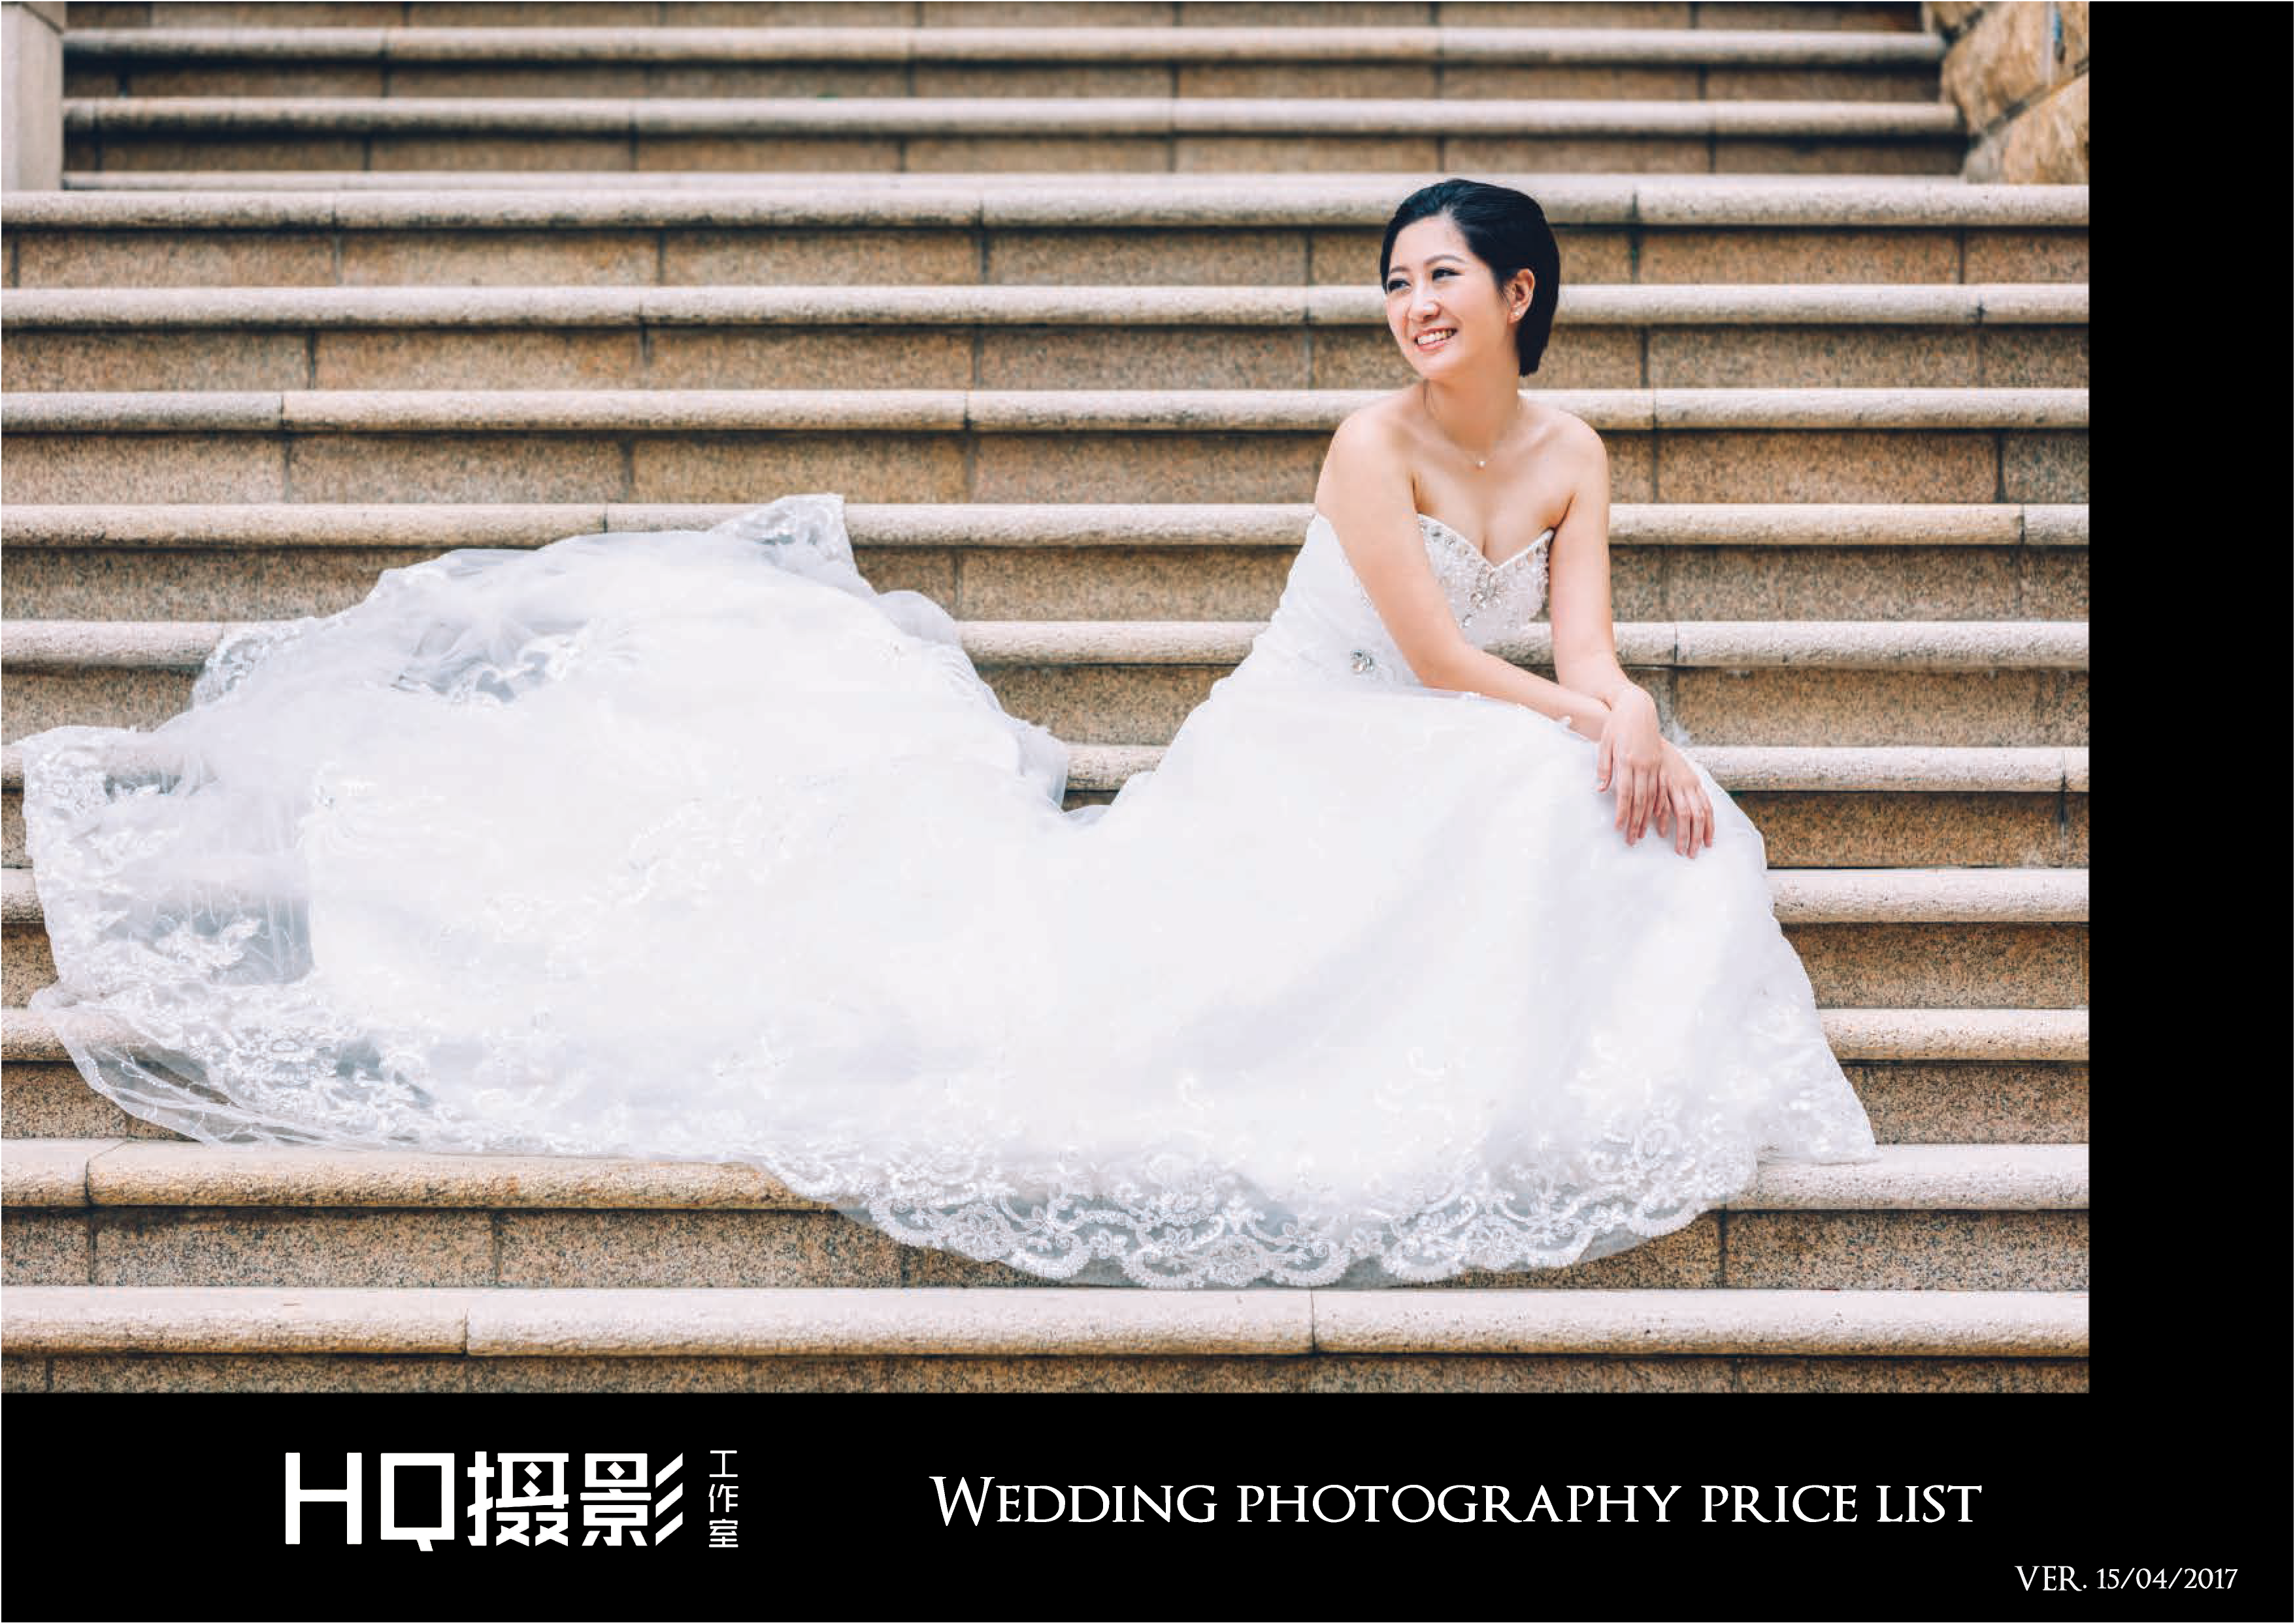 Matt HC Leung攝影師工作紀錄: 馬灣婚紗攝影